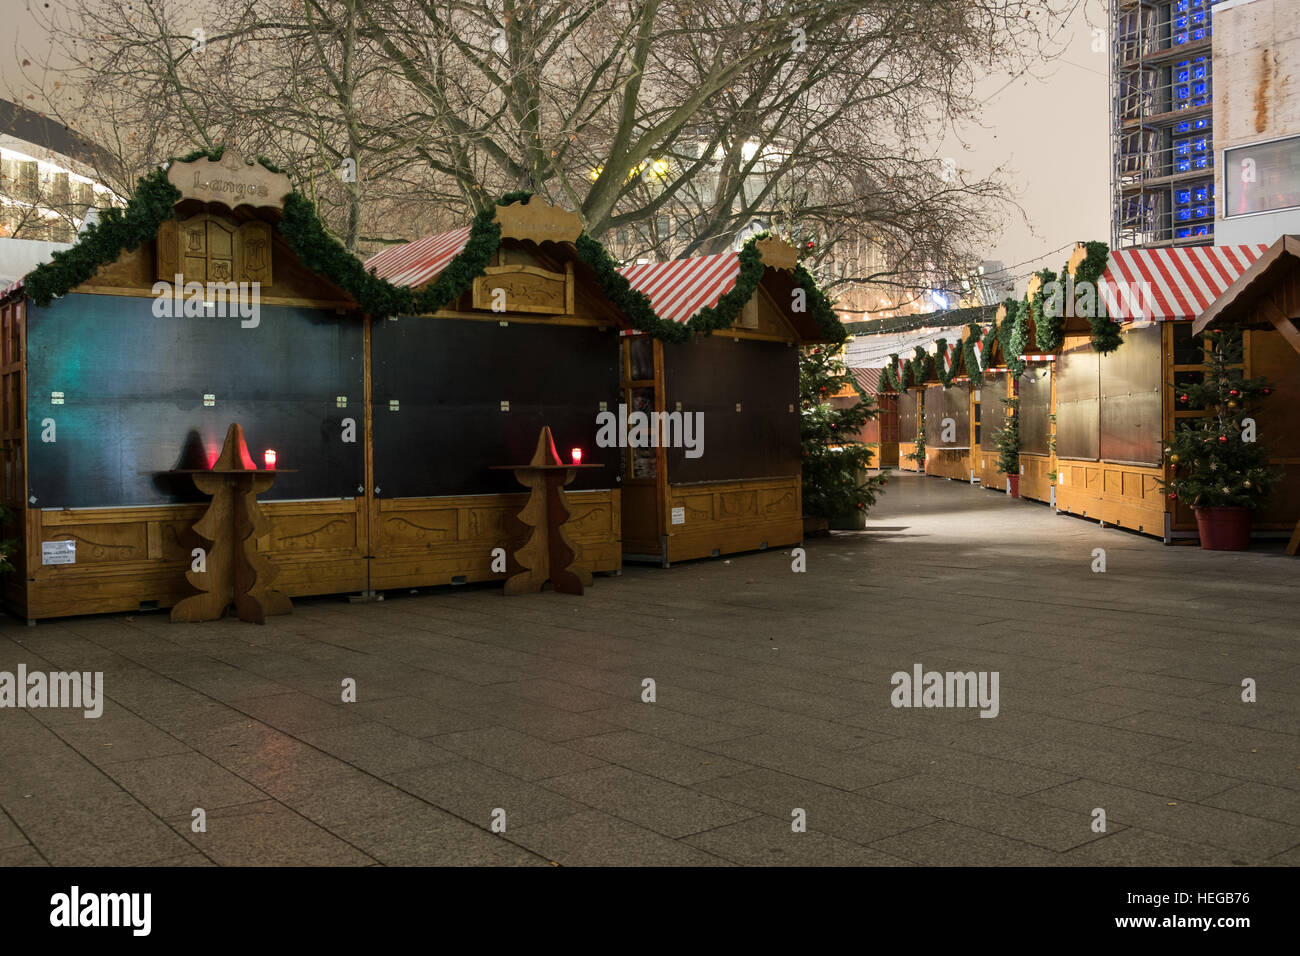 Marché fermé cale au Marché de Noël à Berlin, le jour suivant un camion conduit en foule. Banque D'Images